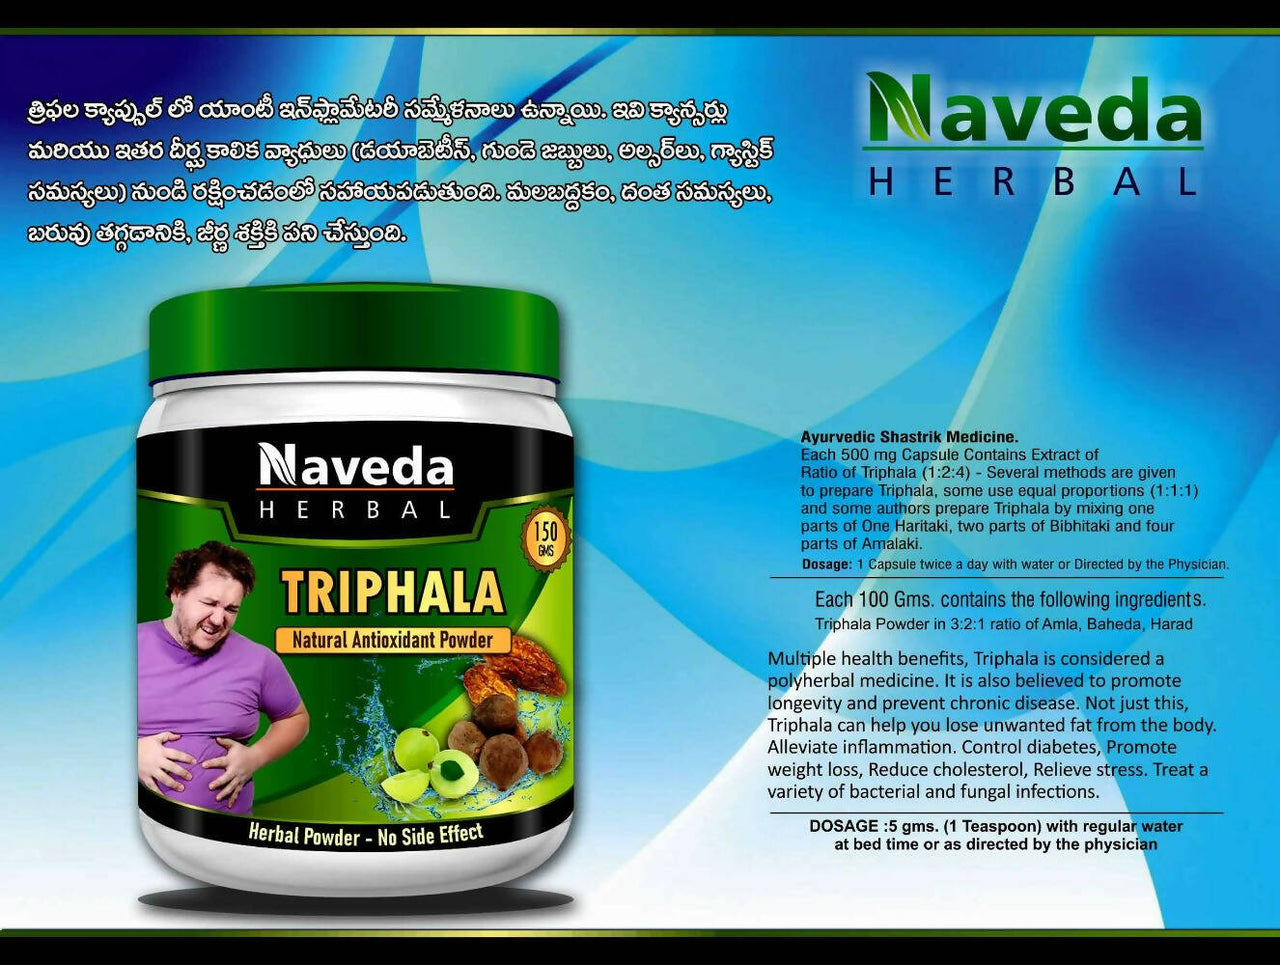 Naveda Herbal Triphala Powder - Distacart